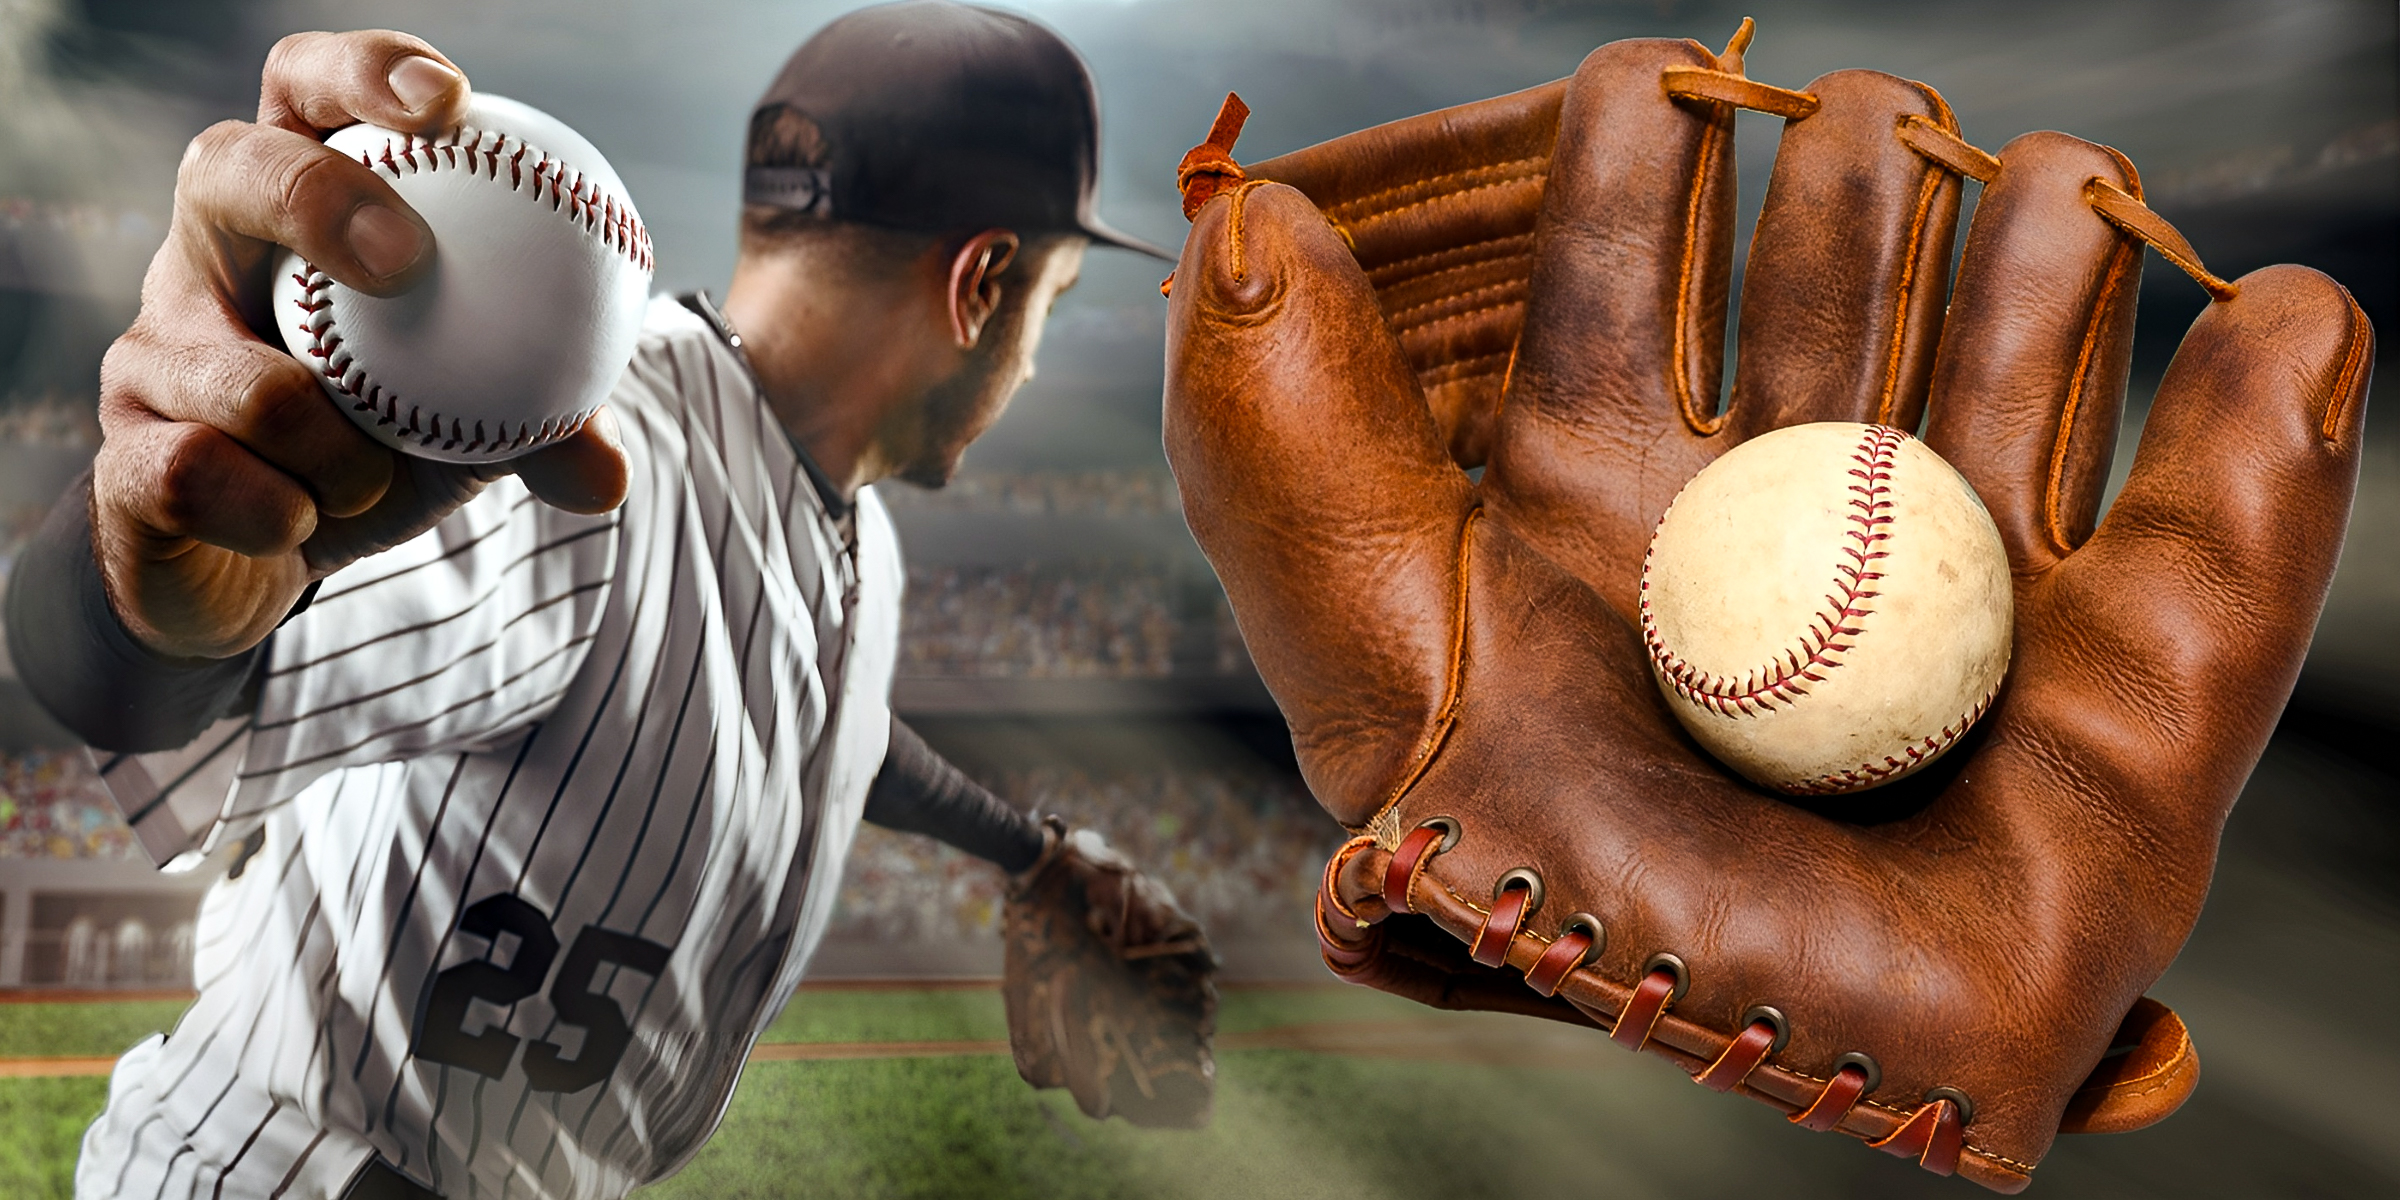 A baseball player's glove | Source: Shutterstock